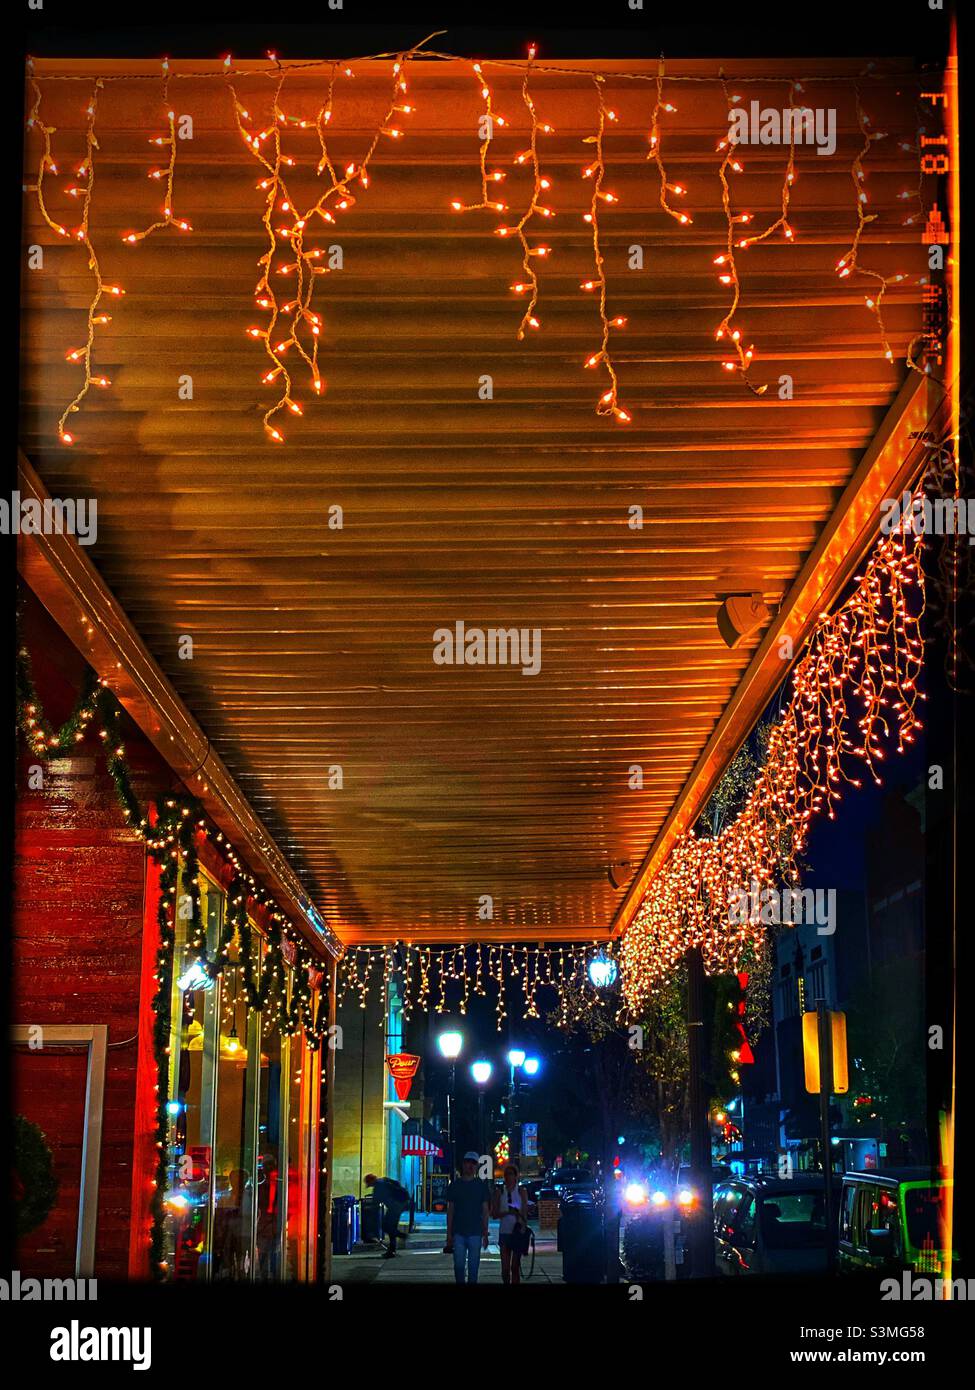 Christmas lights on an awning Stock Photo